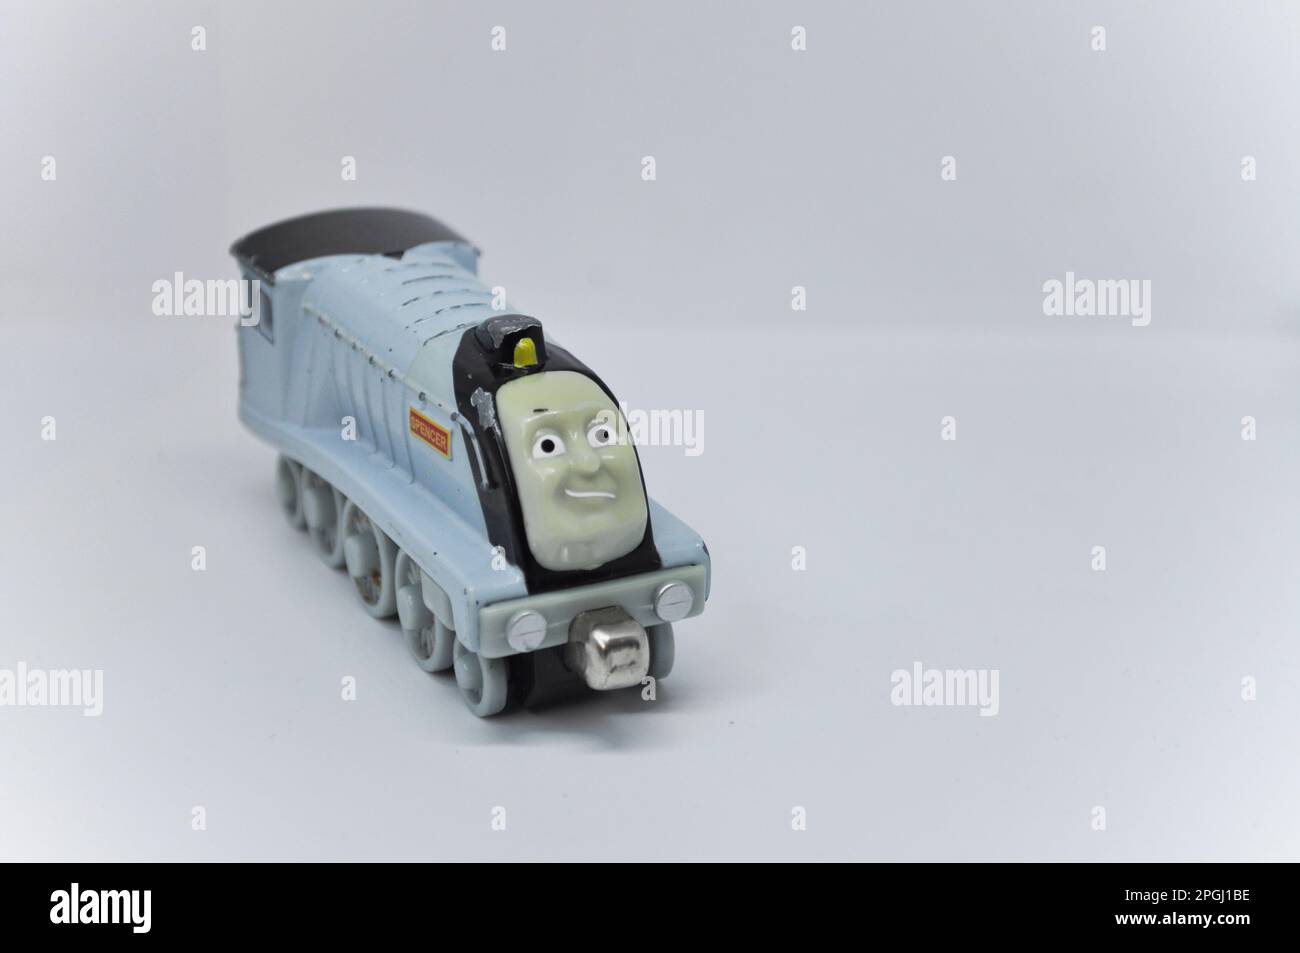 Un modello pressofuso di Spencer della serie Thomas The Tank Engine su sfondo bianco Foto Stock